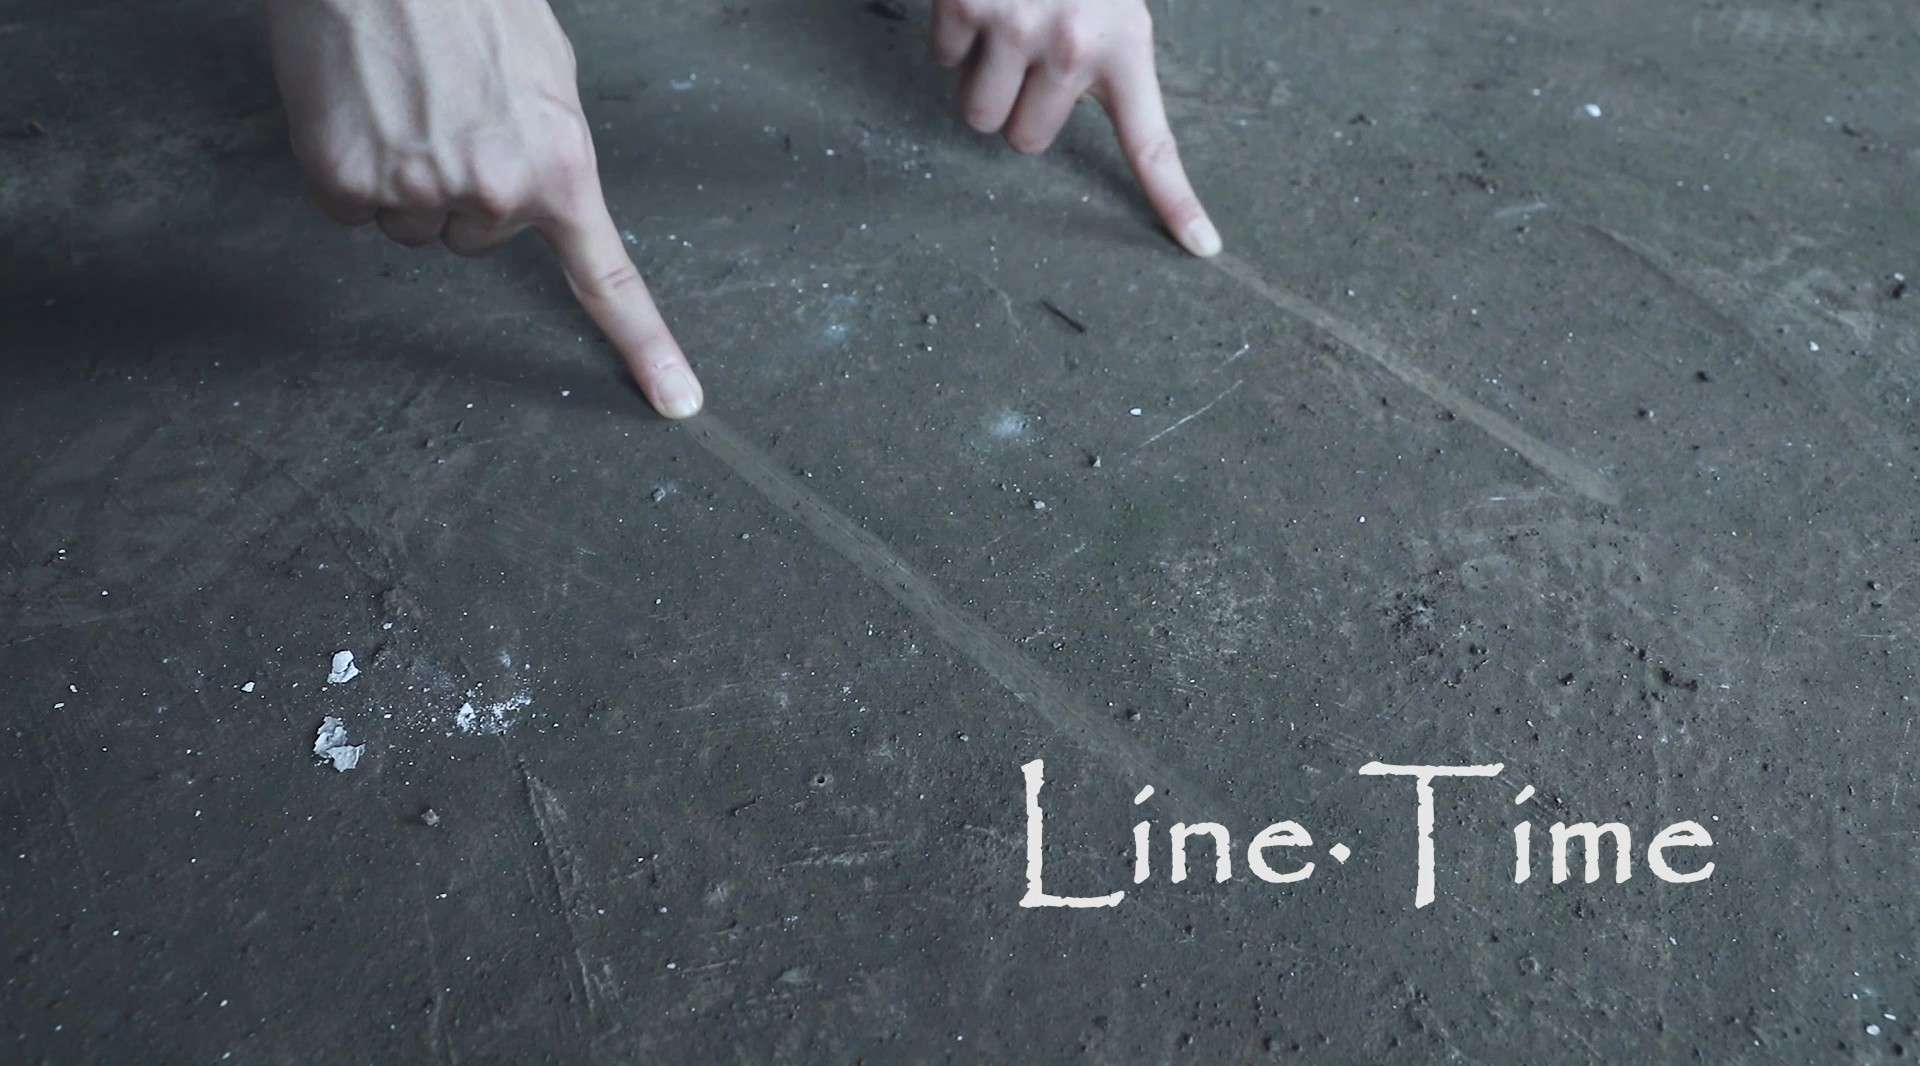 创意舞蹈实验影像《Line·Time》